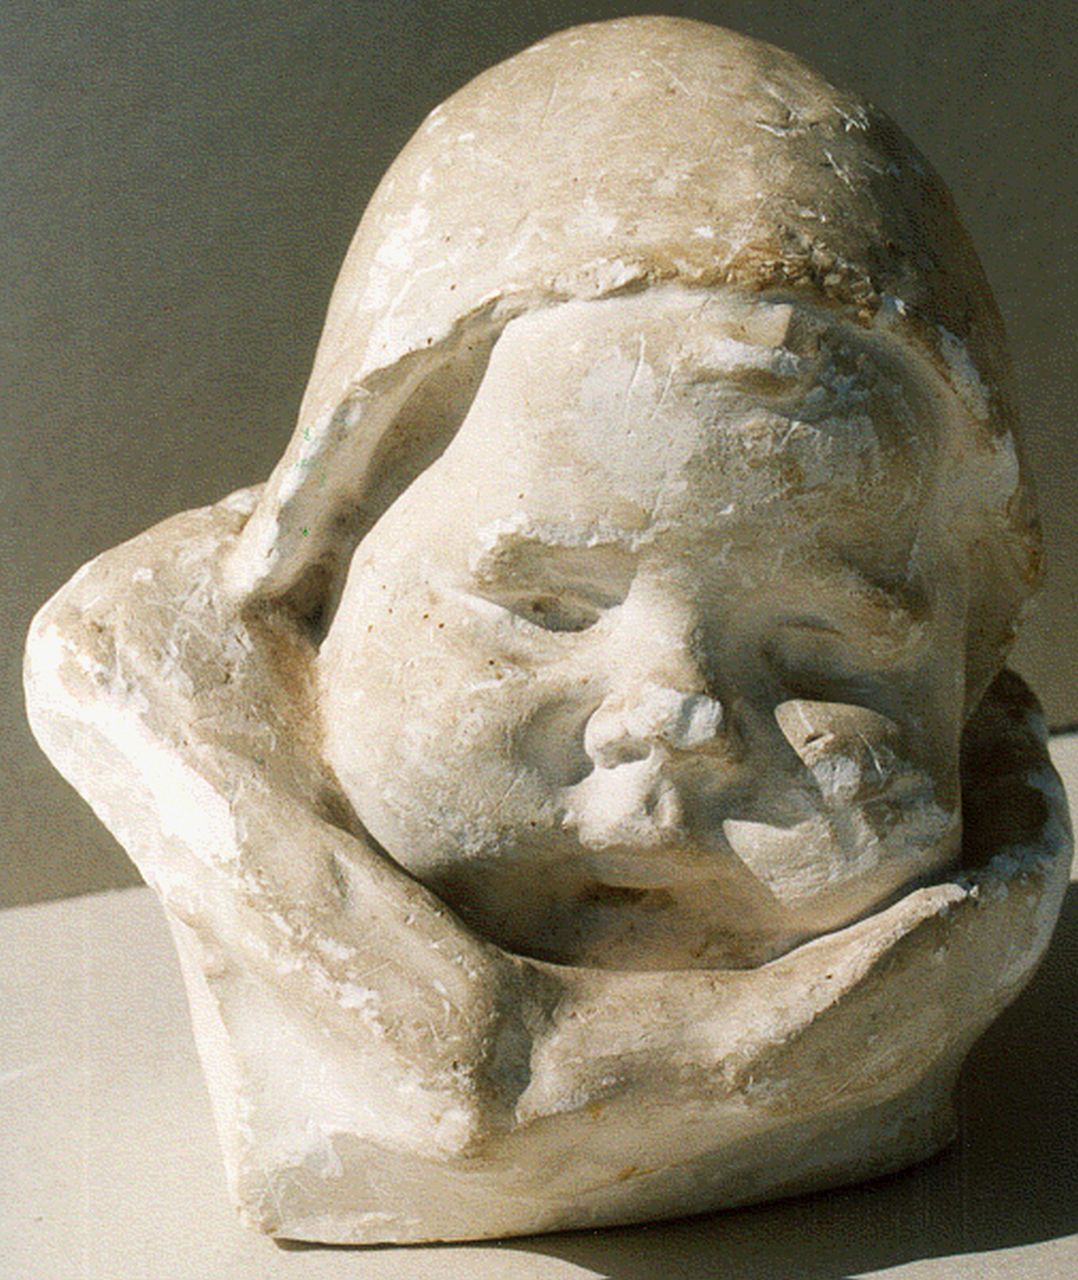 Wijk C.H.M. van | 'Charles' Henri Marie van Wijk, Babykopje met mutsje, gips 15,0 cm, gesigneerd niet